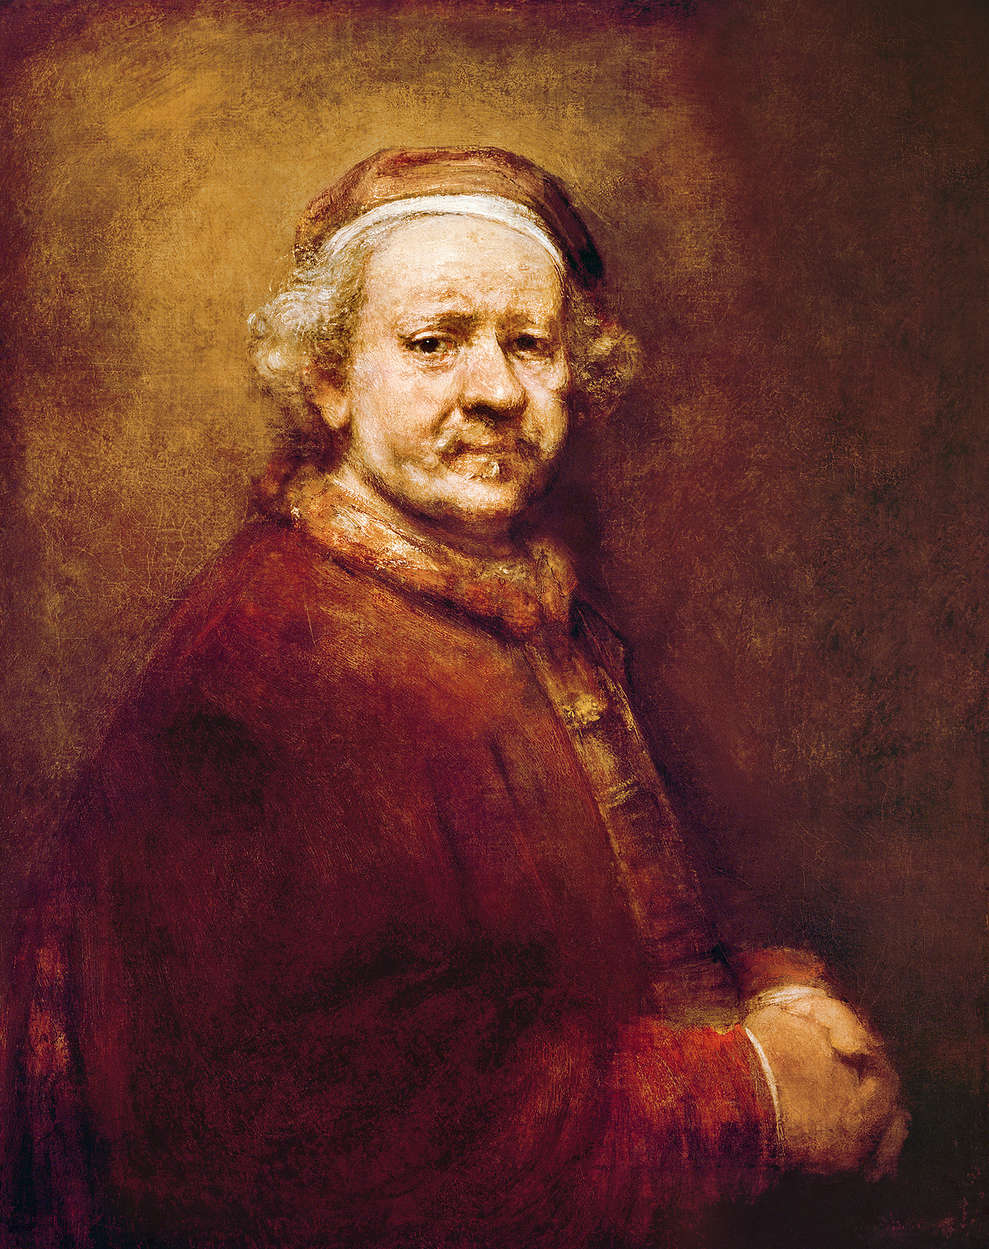             Self Portrait" mural by Rembrandt van Rijn
        